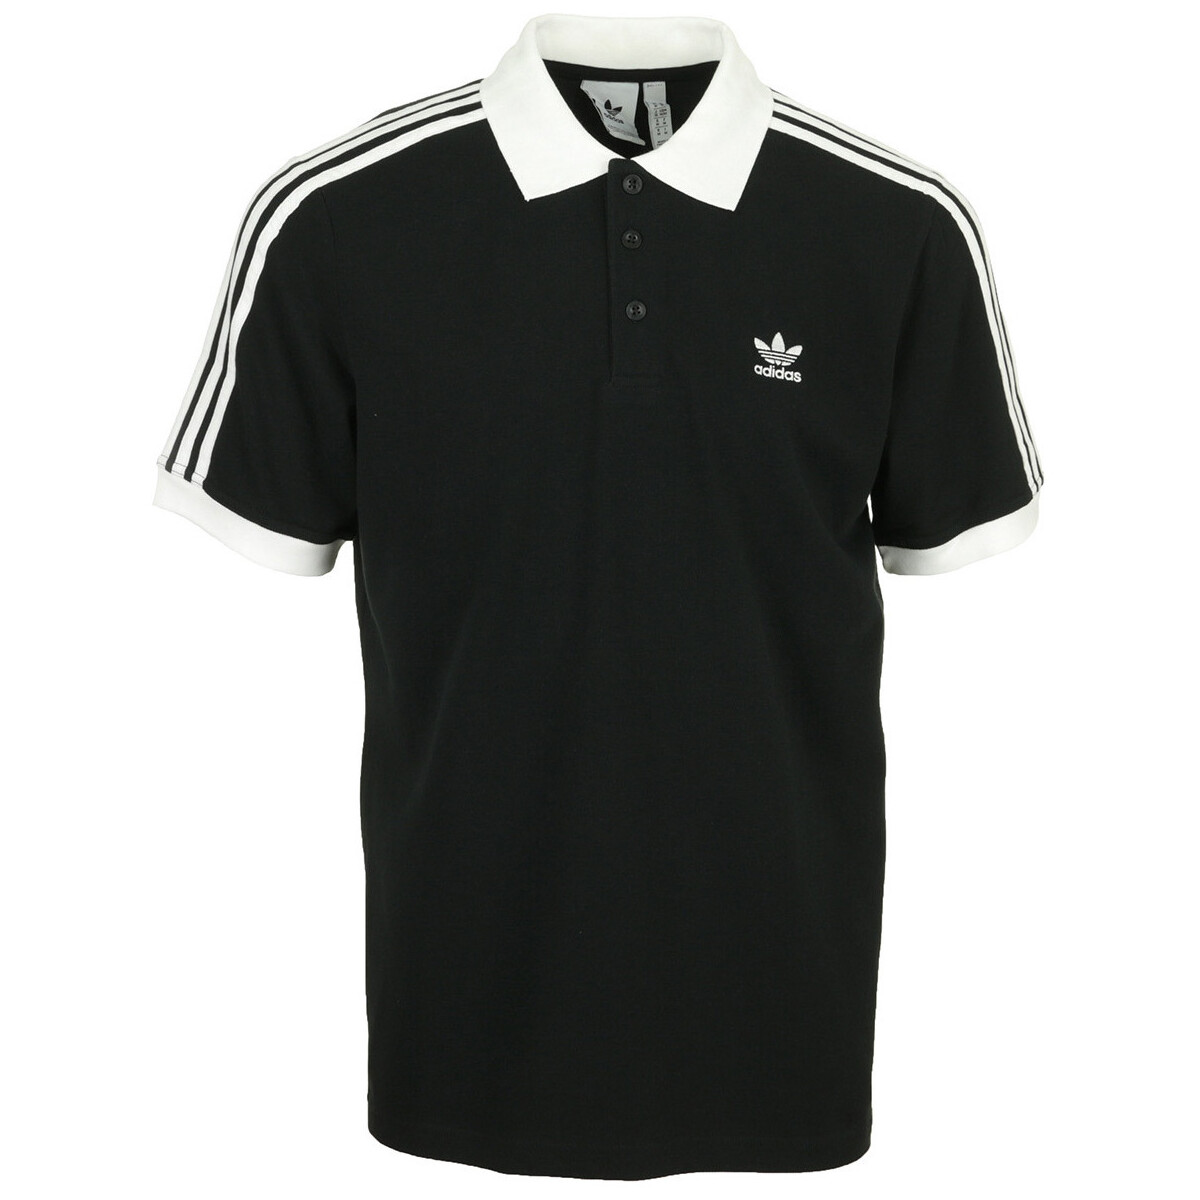 tekstylia Męskie T-shirty i Koszulki polo adidas Originals 3 Stripes Polo Czarny